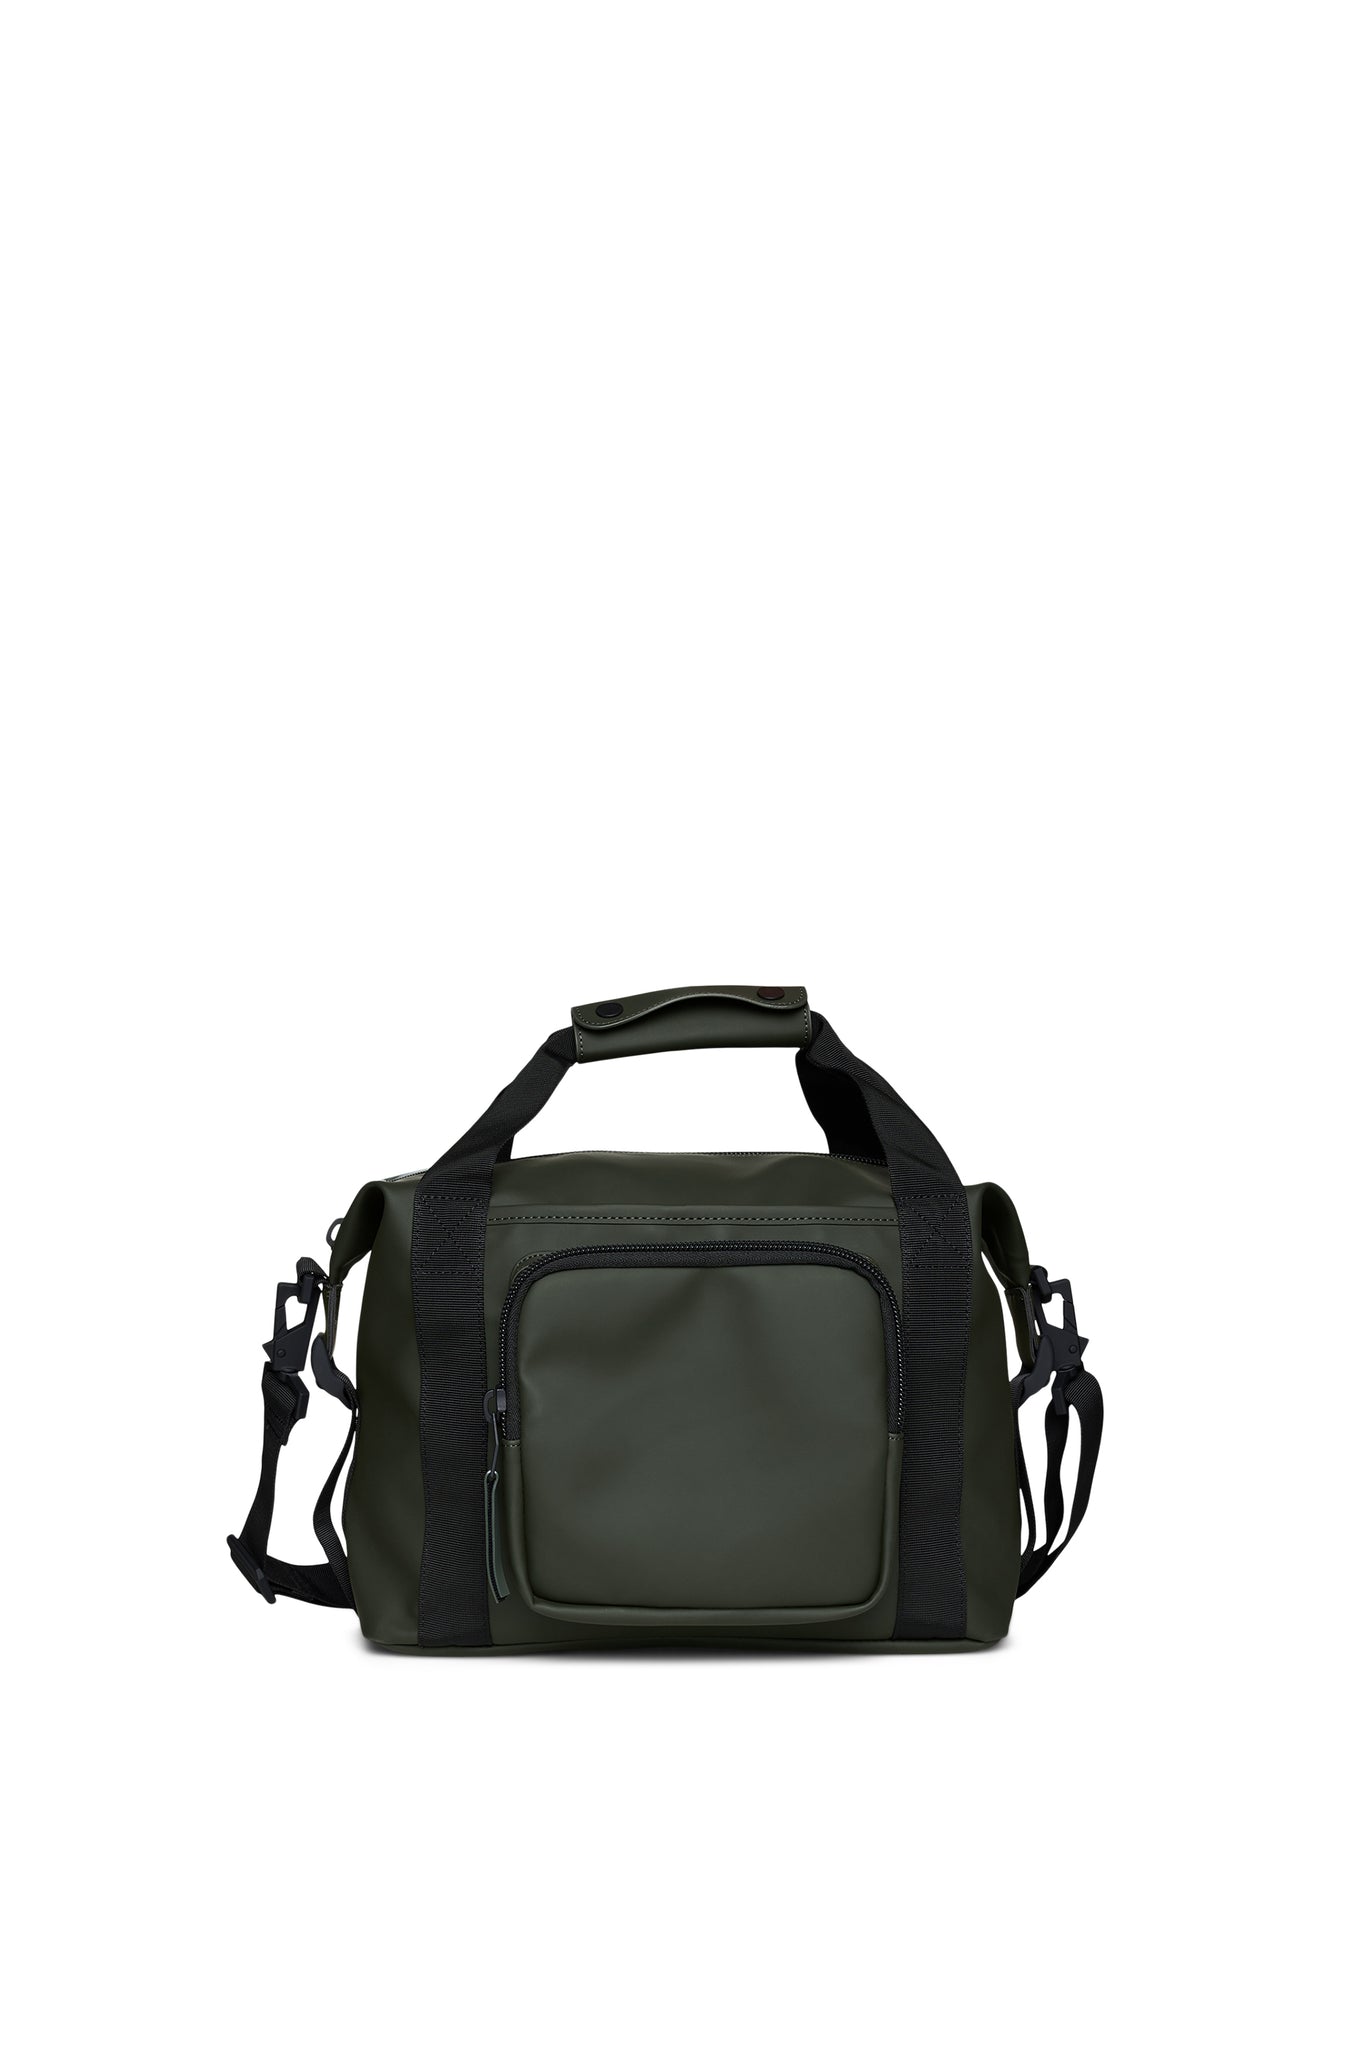 Texel Kit Bag in Green